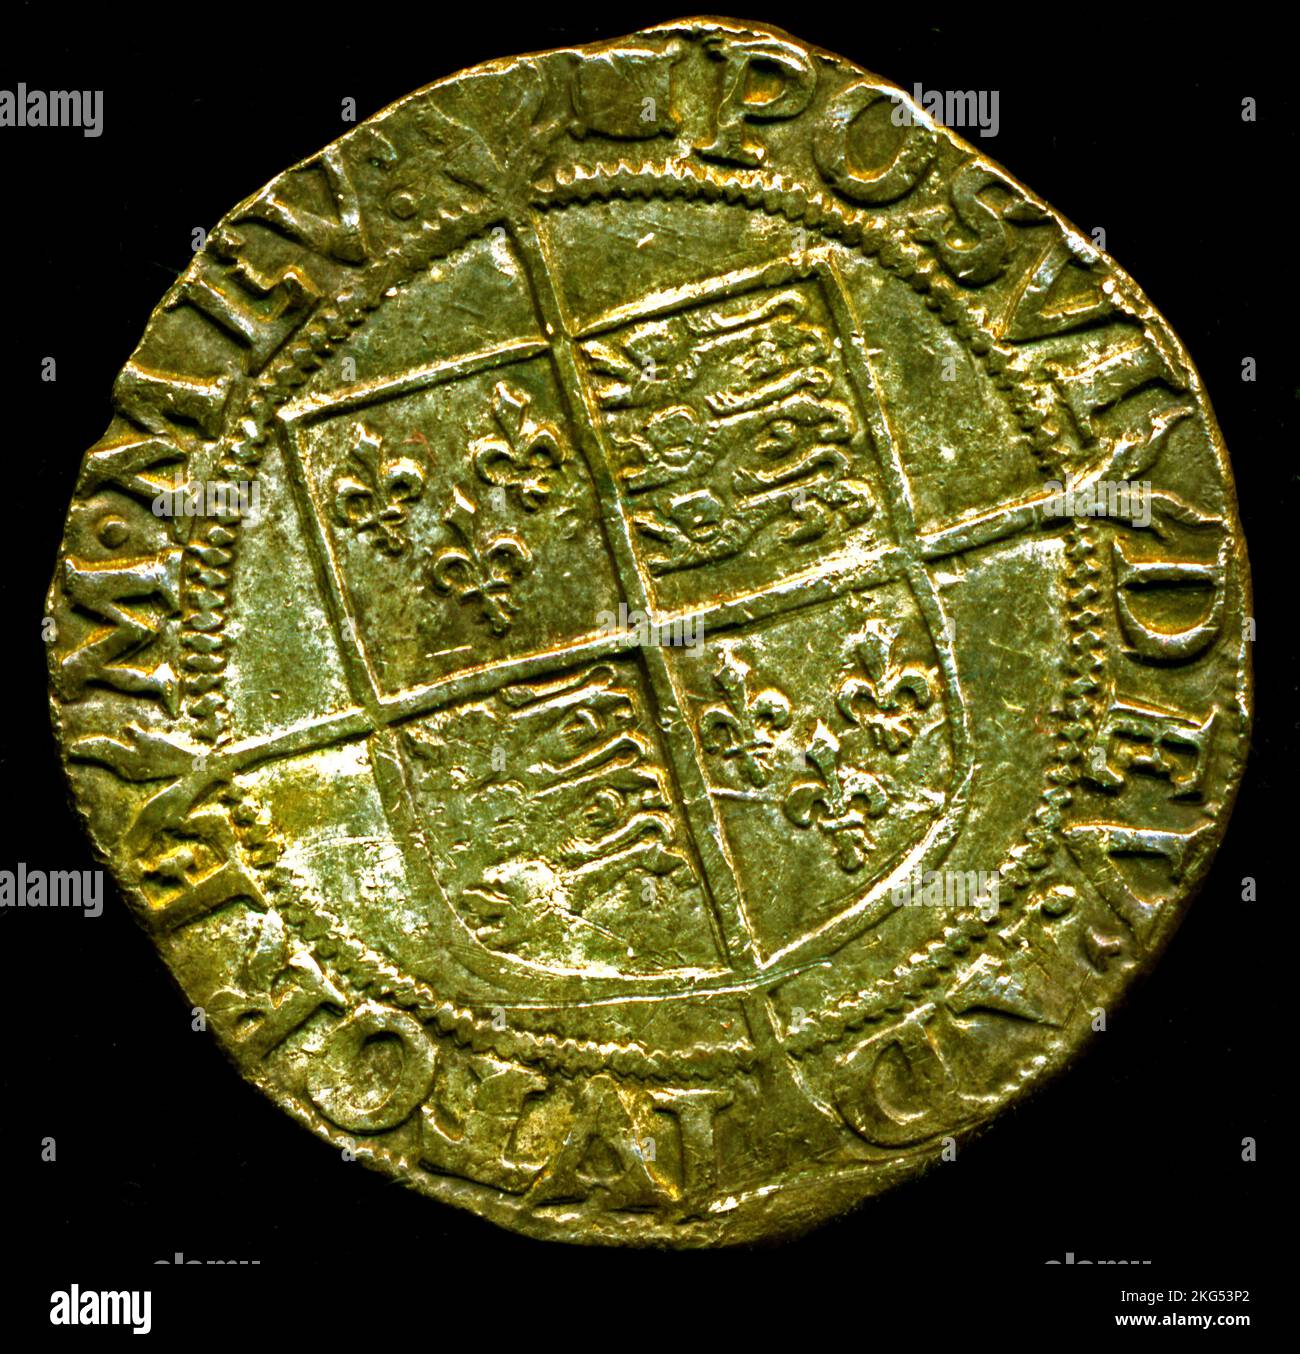 Silberner englischer Schilling, Herrschaft von Königin Elizabeth 1., datiert von 1594 bis 1596, Münzen, Geld, Metalldetektoren finden, Norfolk, England, Großbritannien Stockfoto